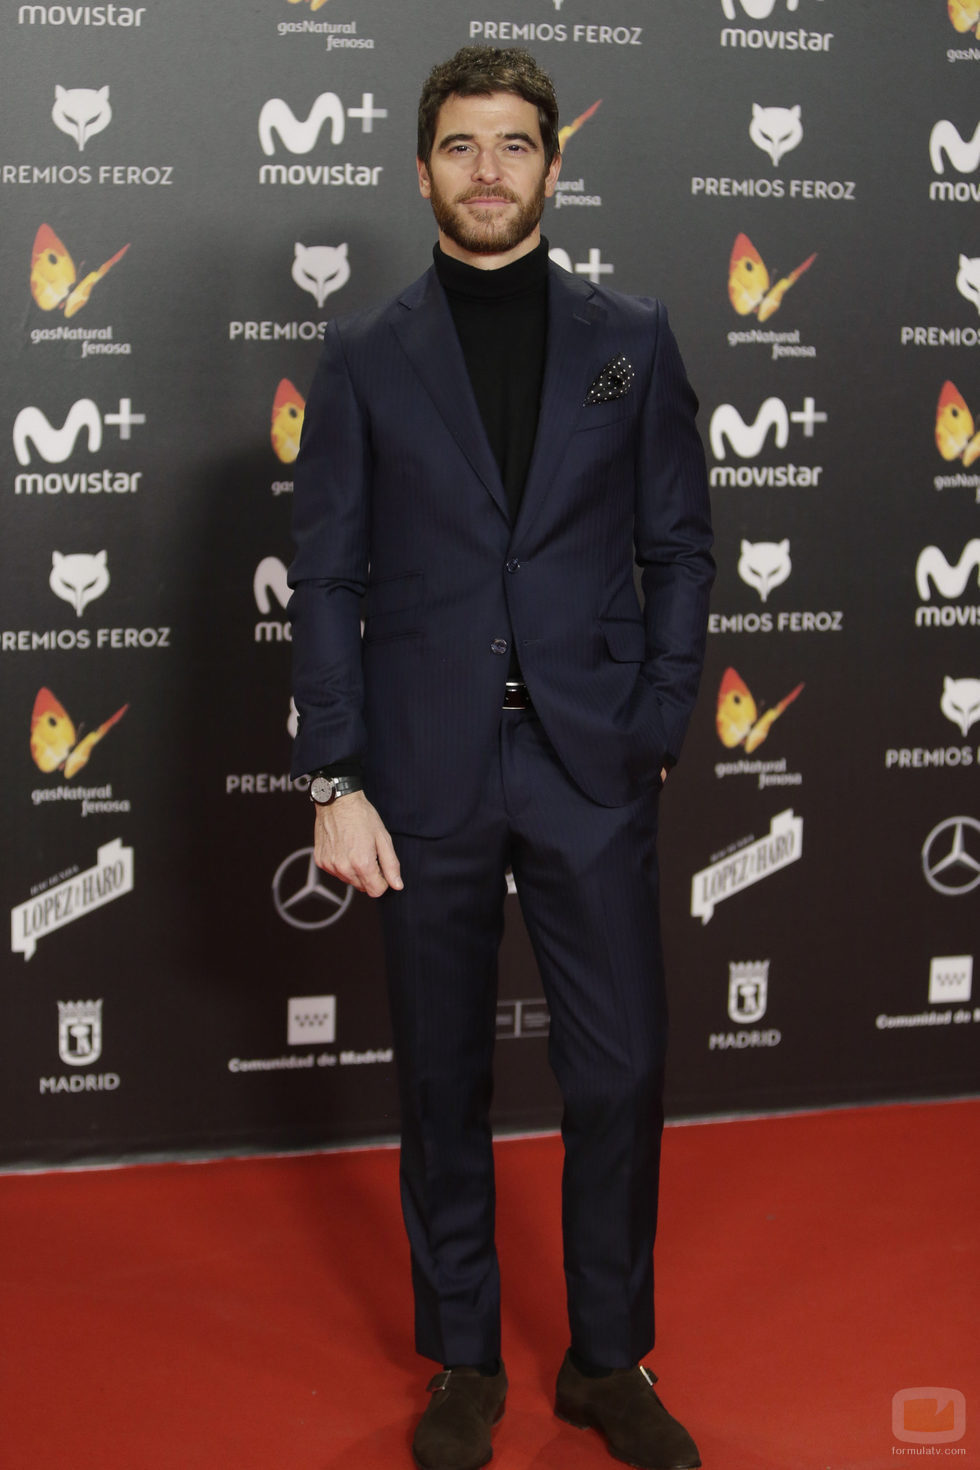 Alfonso Bassave posa en la alfombra roja de los Premios Feroz 2018